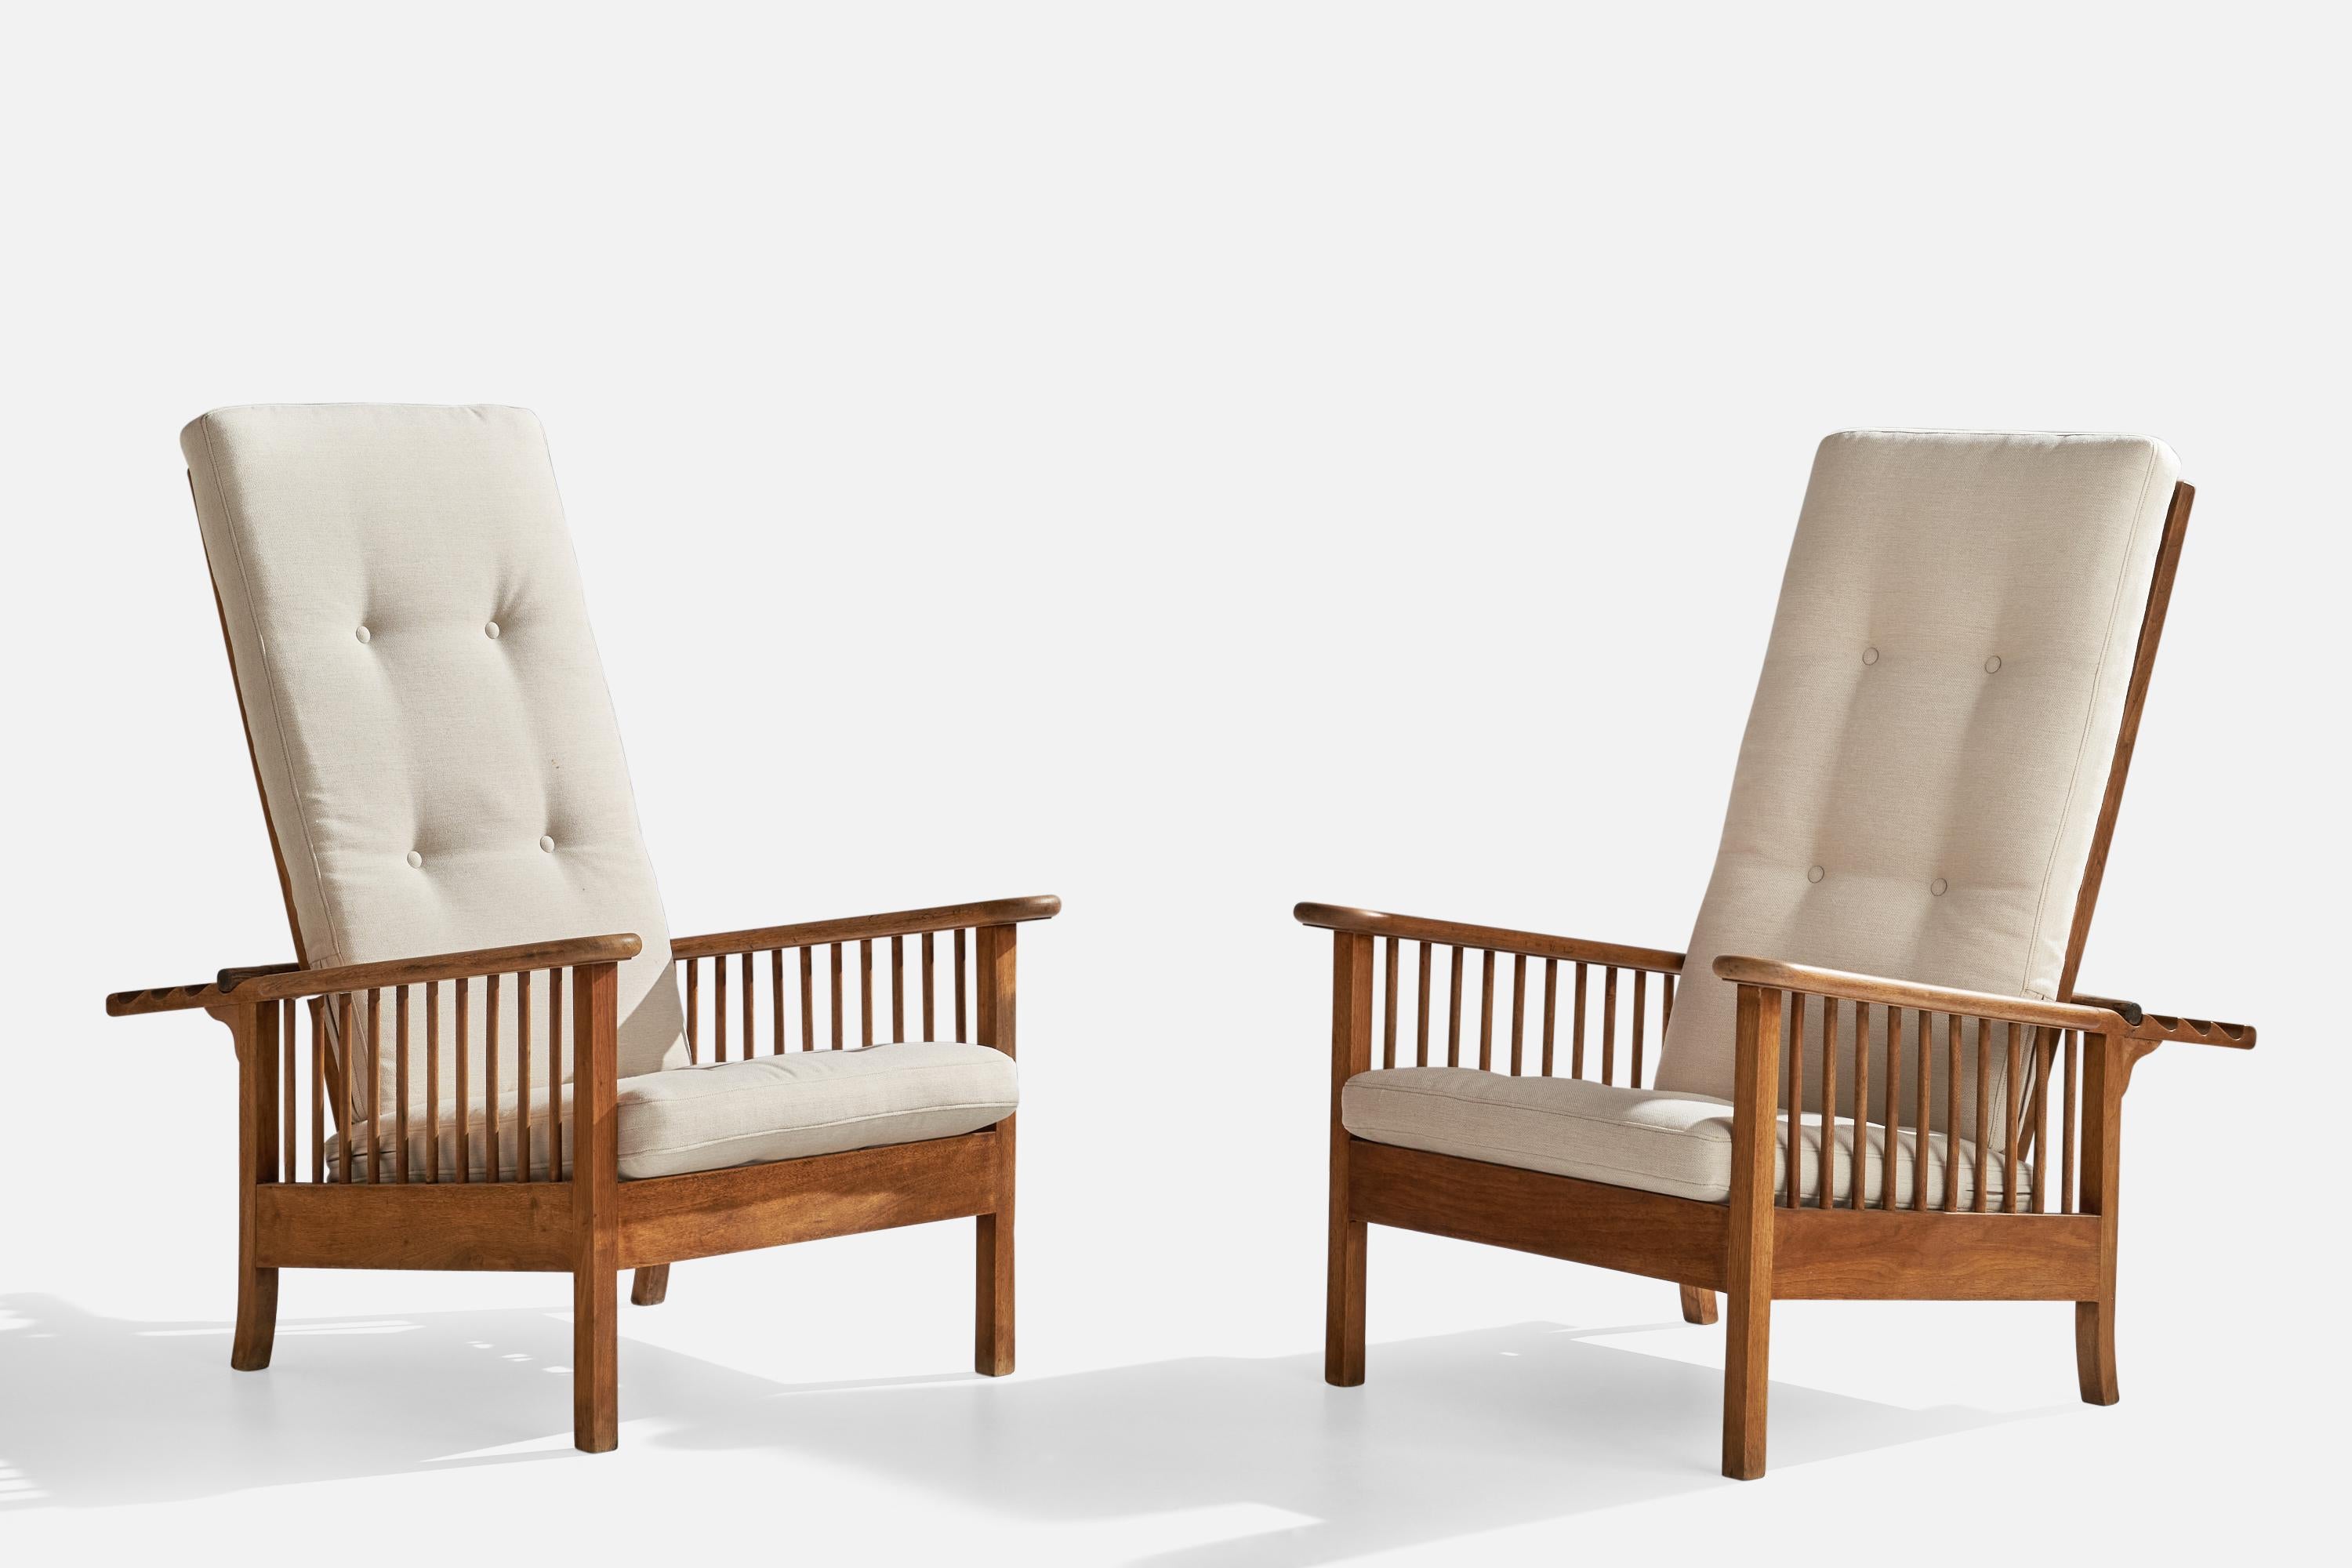 Ein Paar verstellbare Sessel mit hoher Rückenlehne aus Eiche, Messing und cremefarbenem Stoff, entworfen und hergestellt in Italien, 1940er Jahre.

Sitzhöhe: 14.75